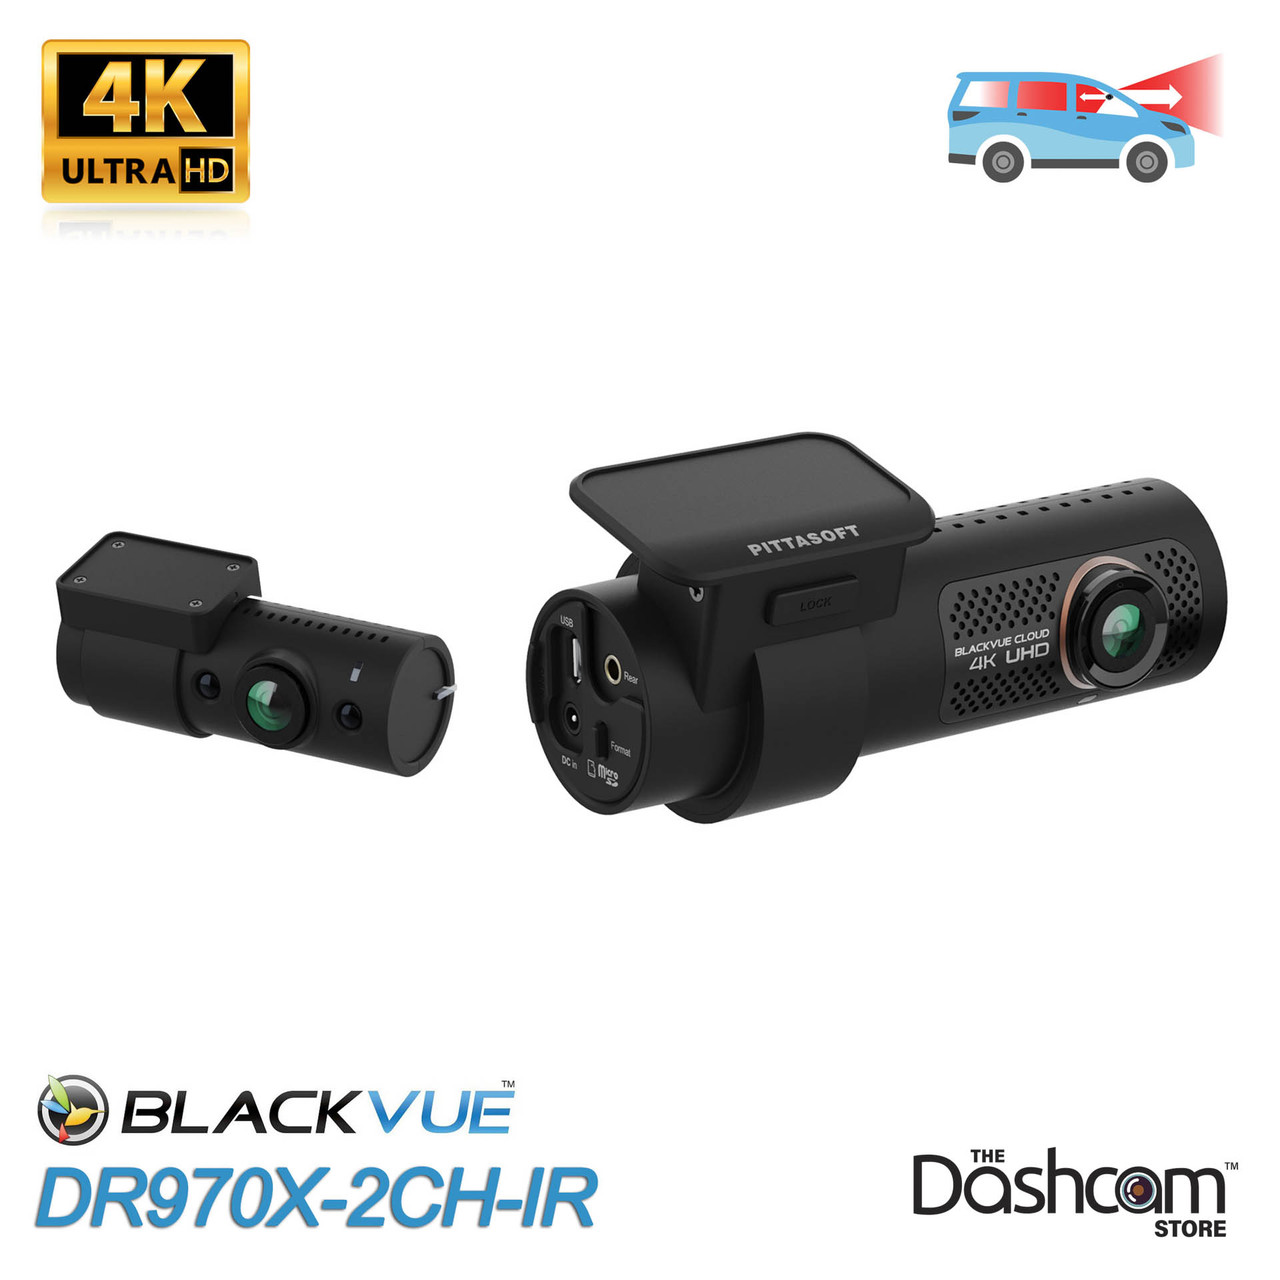 Save $81 on Vantrue's always-on HD dash cam at